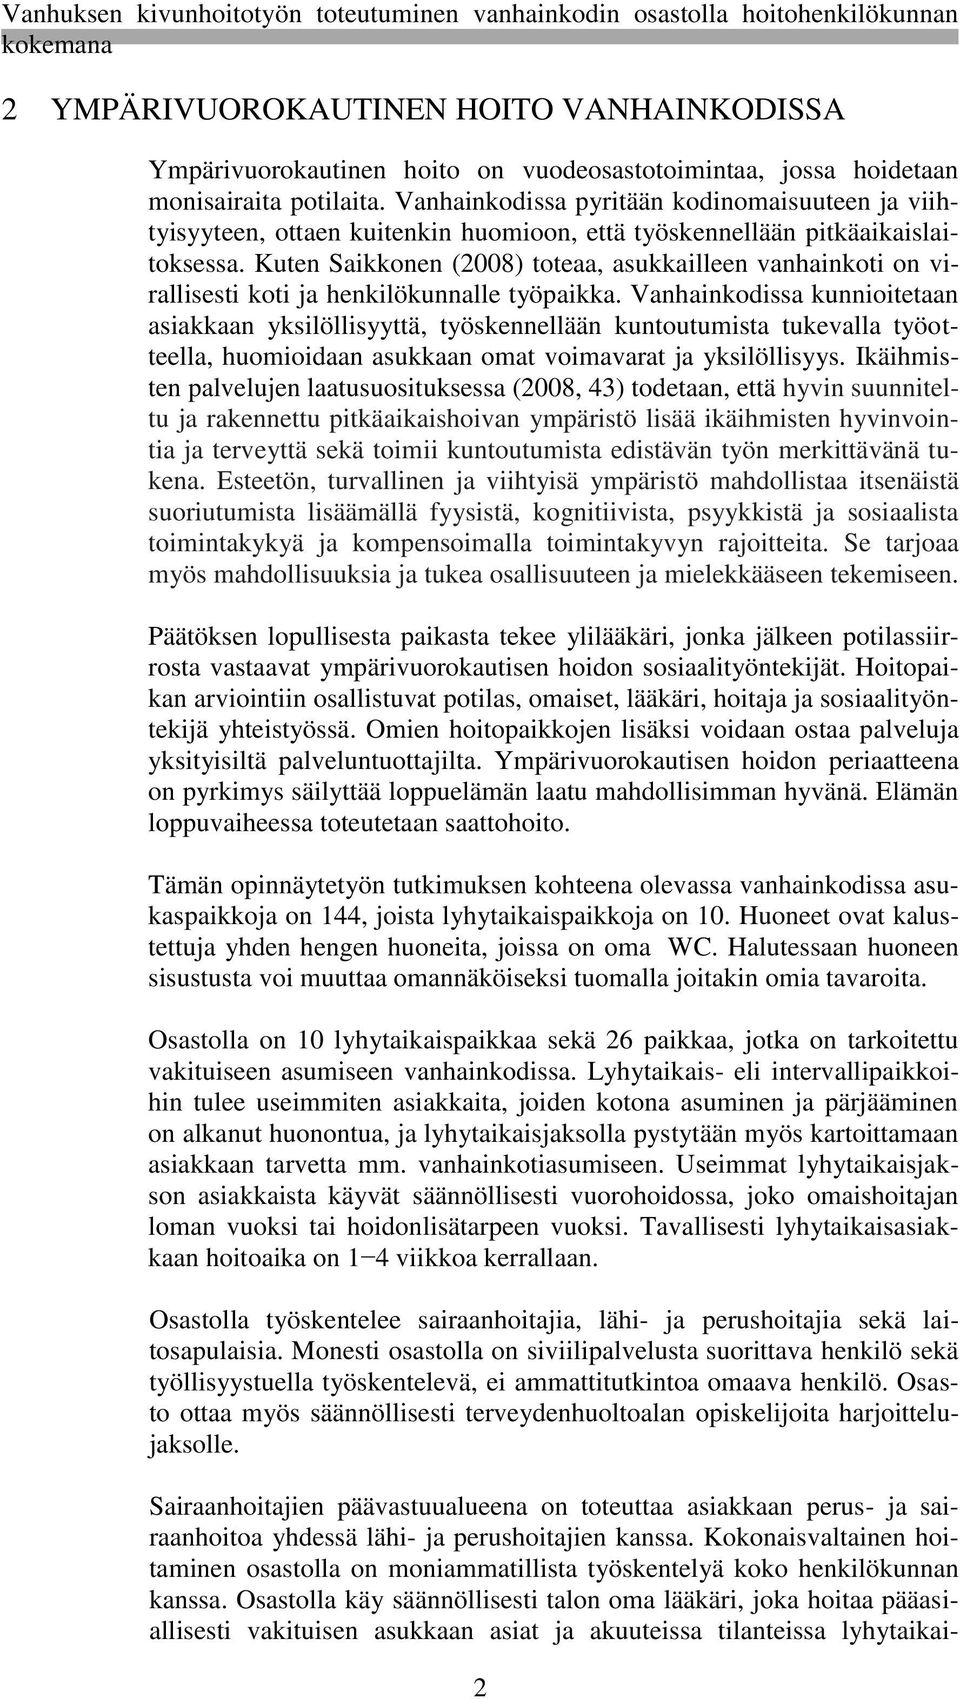 Kuten Saikkonen (2008) toteaa, asukkailleen vanhainkoti on virallisesti koti ja henkilökunnalle työpaikka.